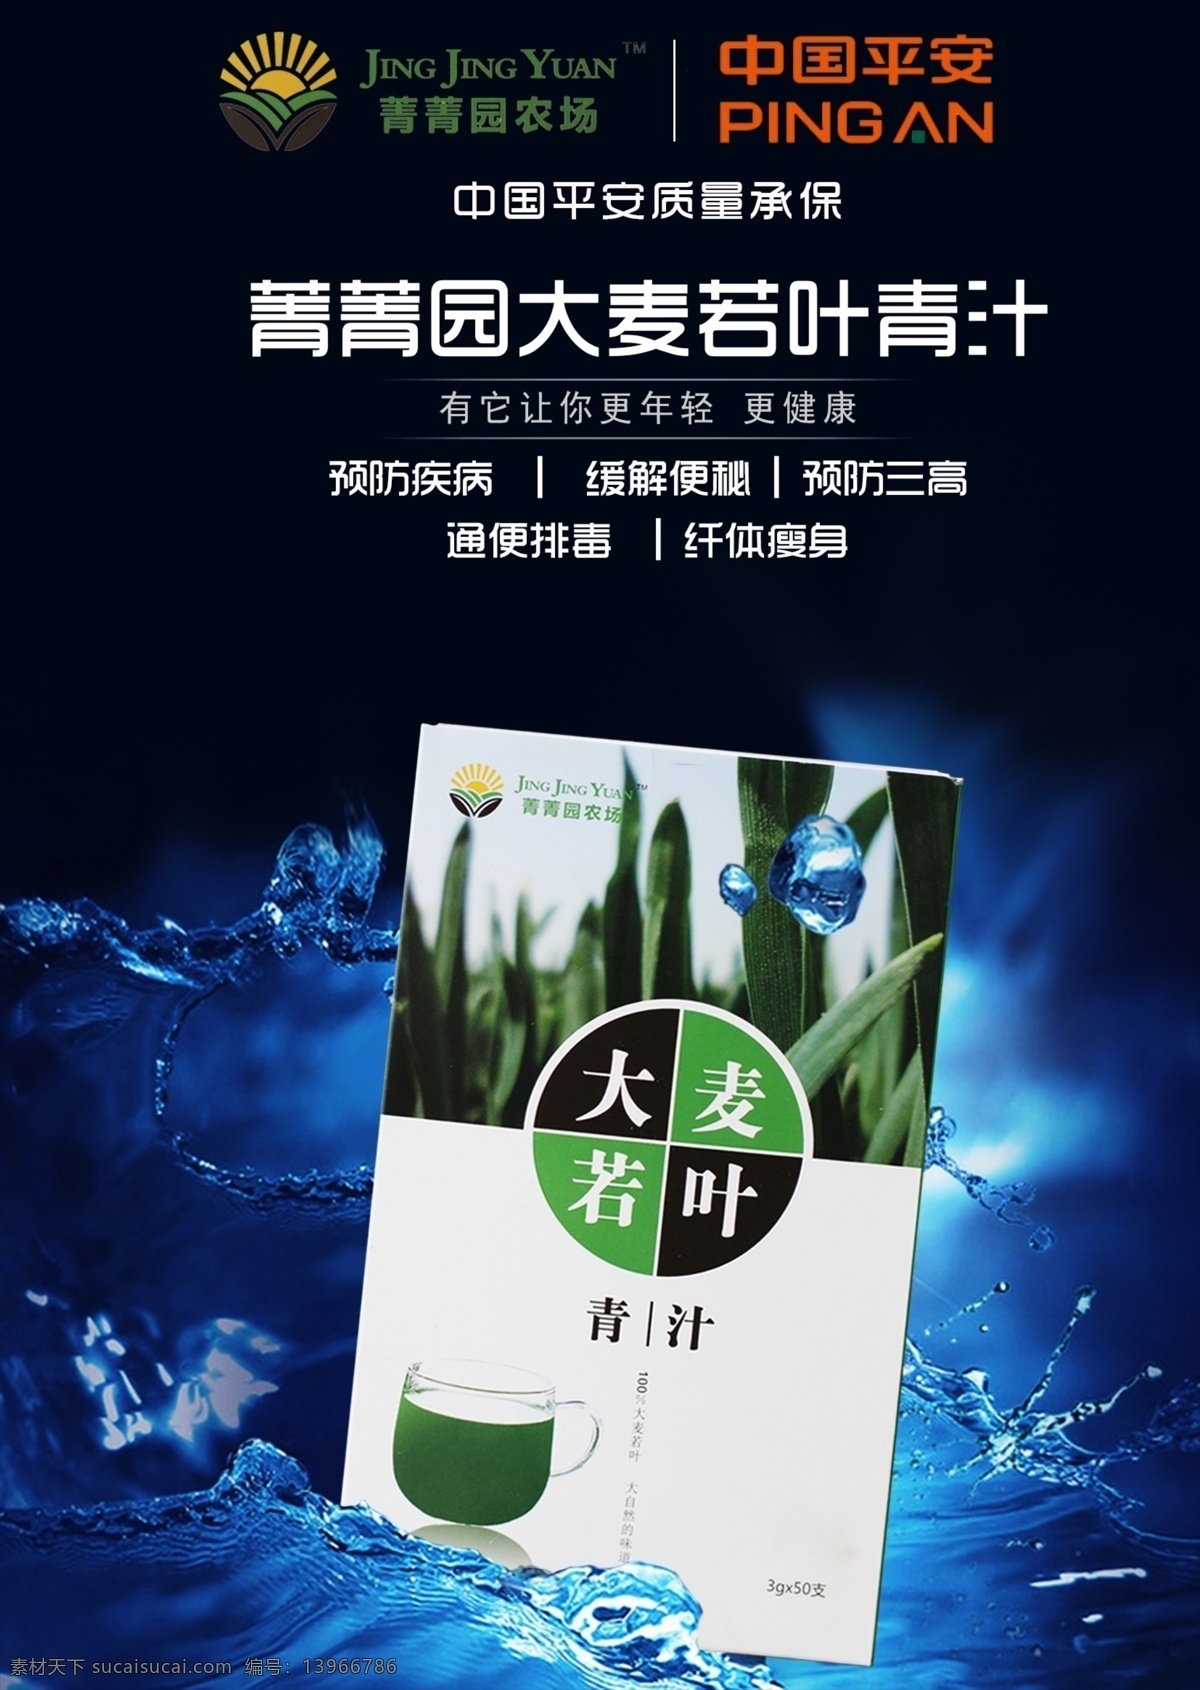 大麦若叶青汁 青汁 菁菁园 微商 创业 海报 健康 营养 绿色食品 保证 功效 黑色